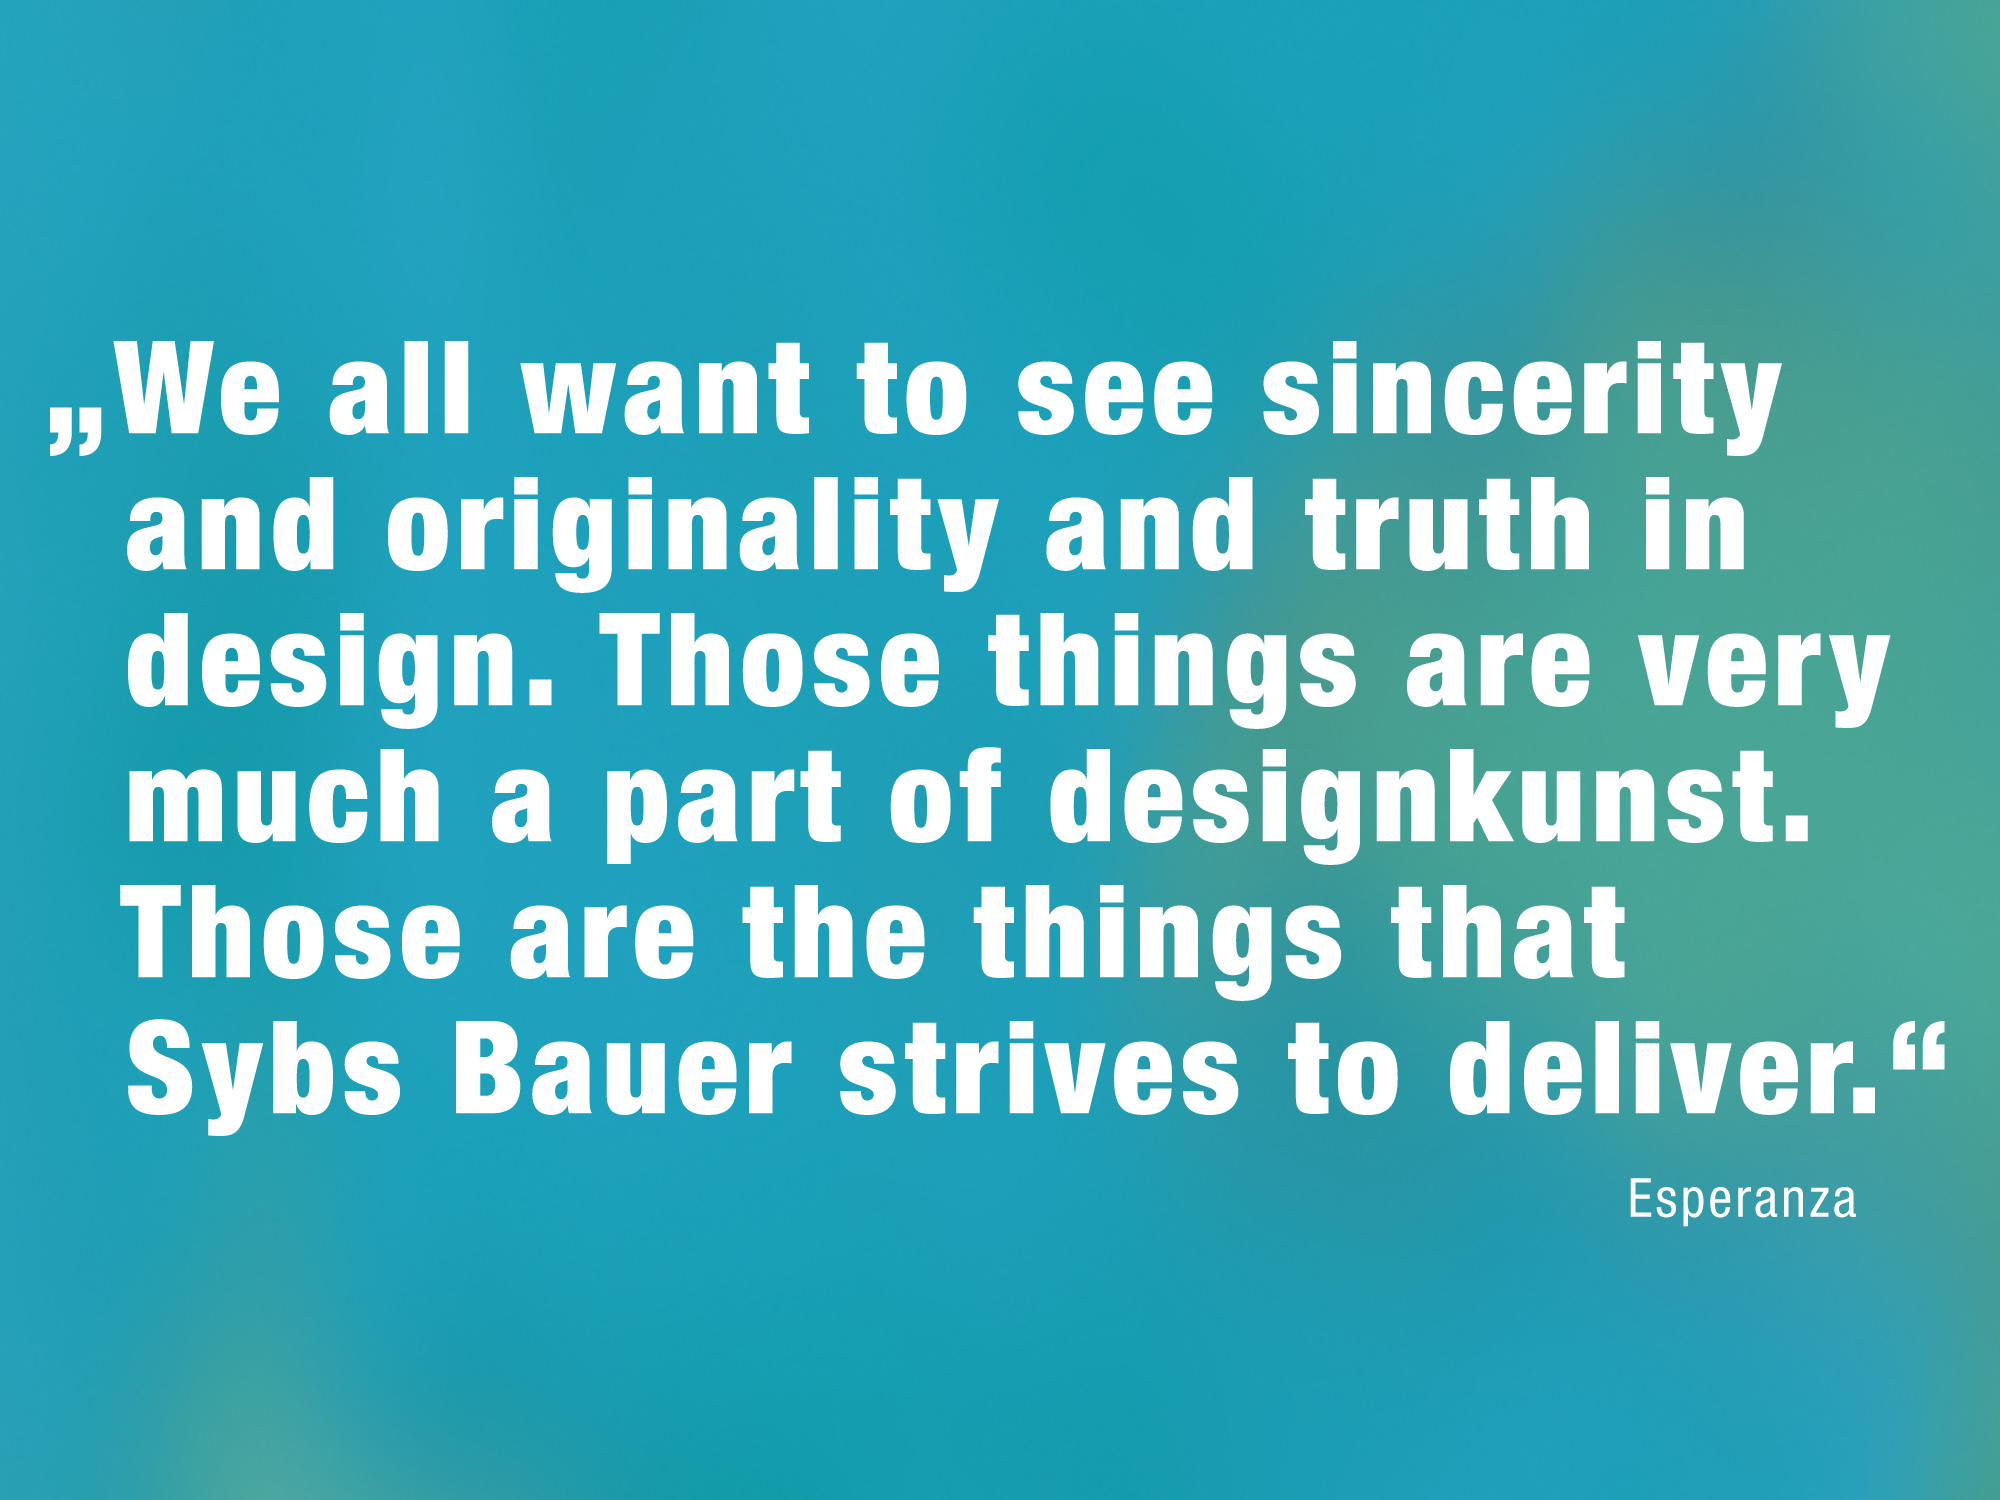 Zitat über die Arbeit von Sybs Bauer